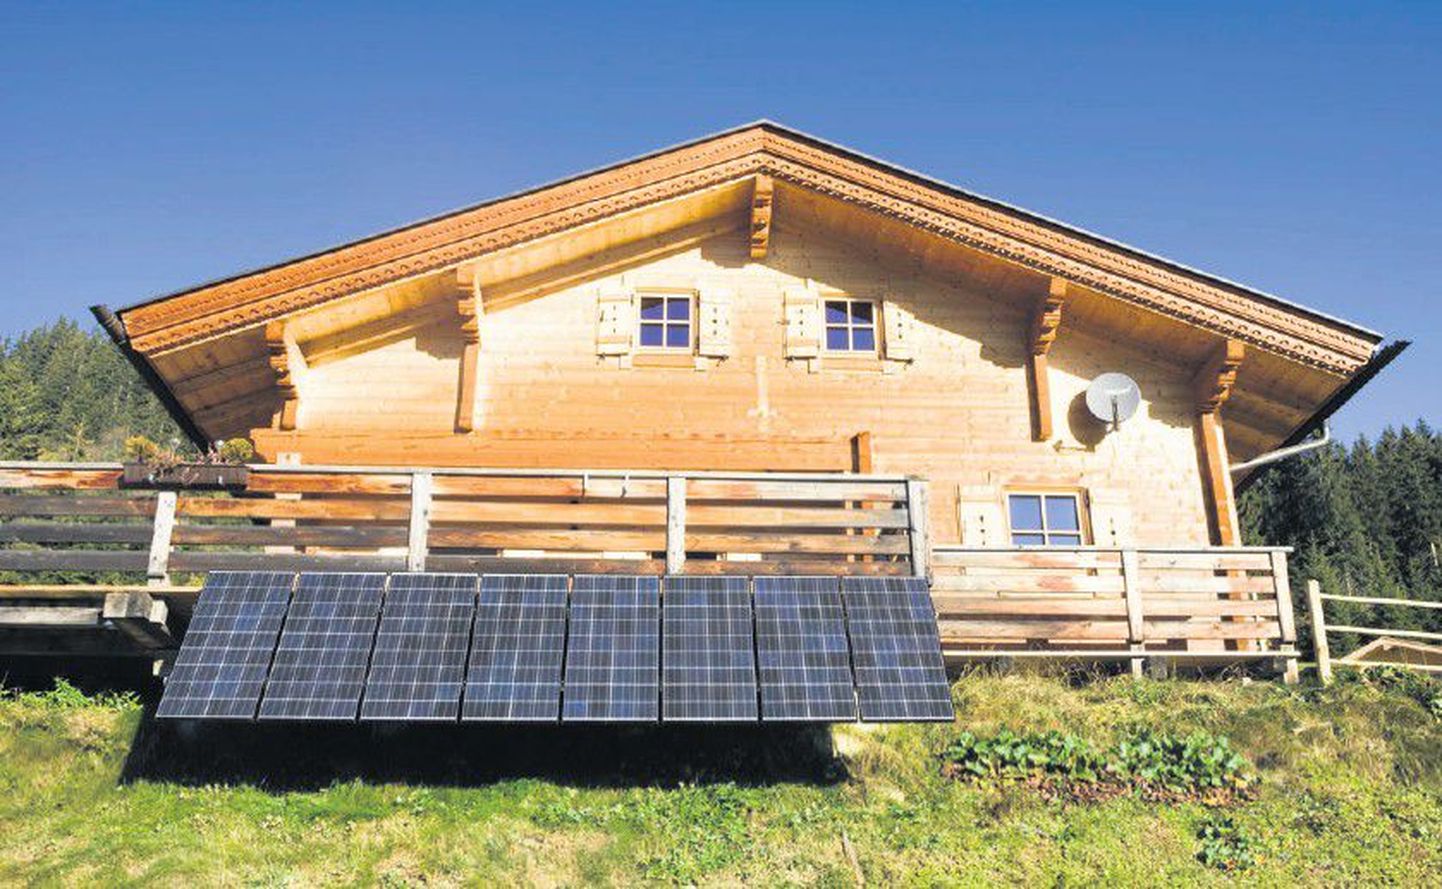 Päikseküllasel ajal saab elektri pealt kokku hoida näiteks päikesepaneele kasutades. Paljudes lõunamaades on see lahendus juba majade standardvarustuses, et suvel nii sooja vett toota.